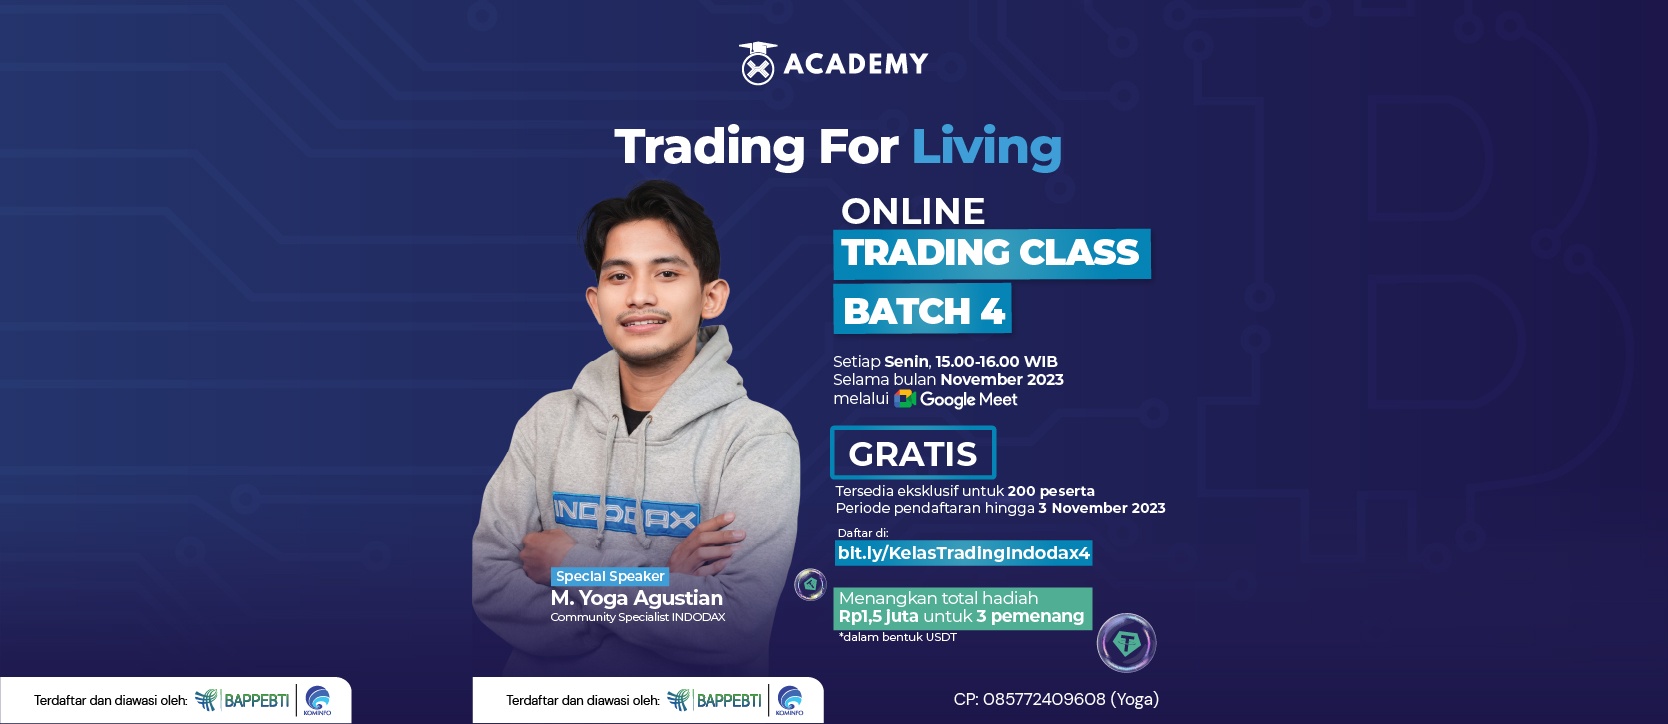 Yuk ikutan online class Trading For Living dari Indodax Academy. Di online class ini kalian bisa mendapatkan banyak pengetahuan tentang cara trading yang tepat dan bijak dari M. Yoga Agustian (Community Specialist Indodax)